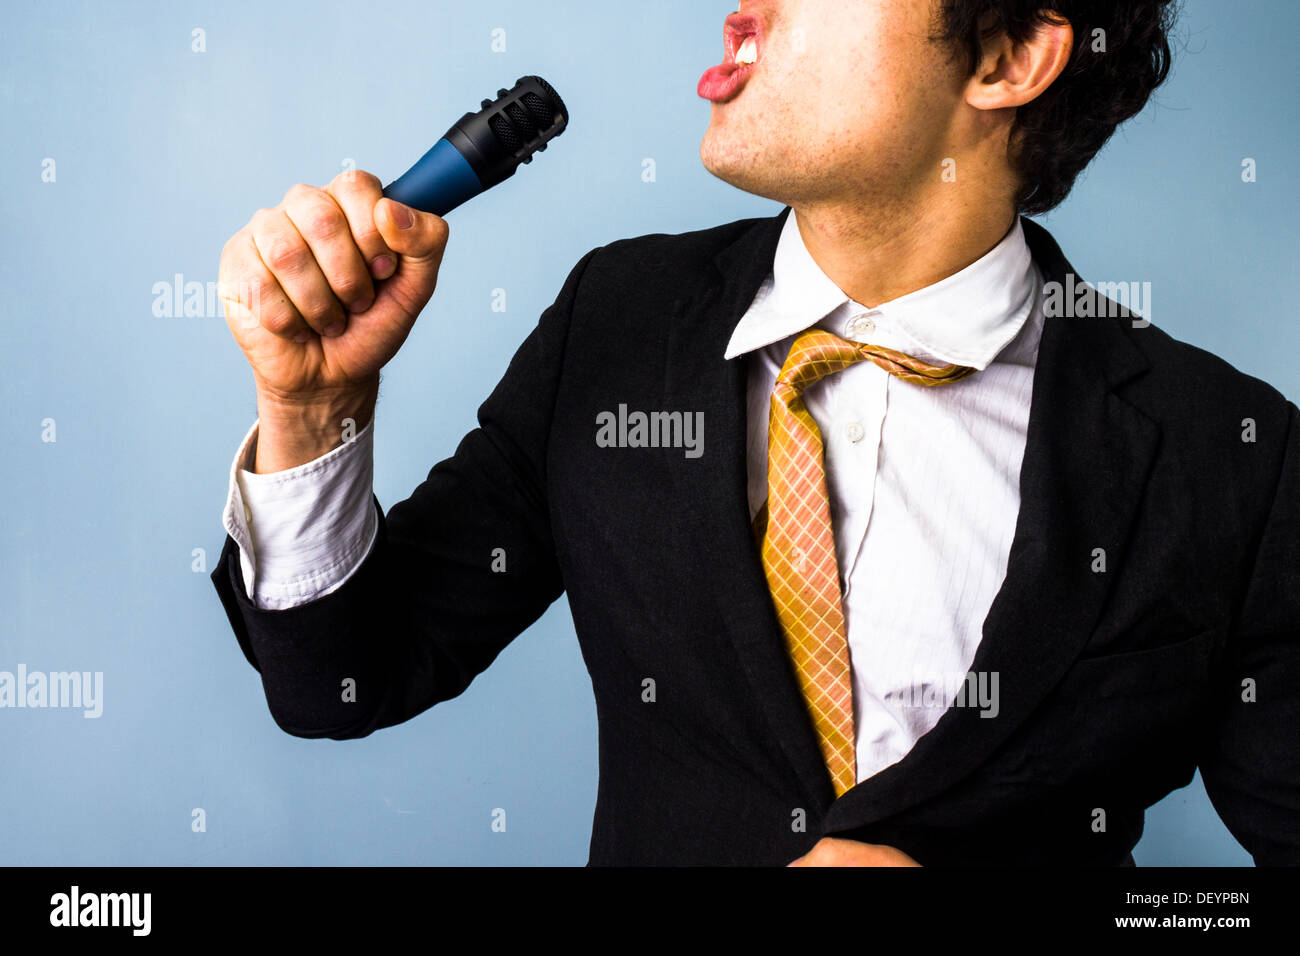 Karaoke immagini e fotografie stock ad alta risoluzione - Alamy